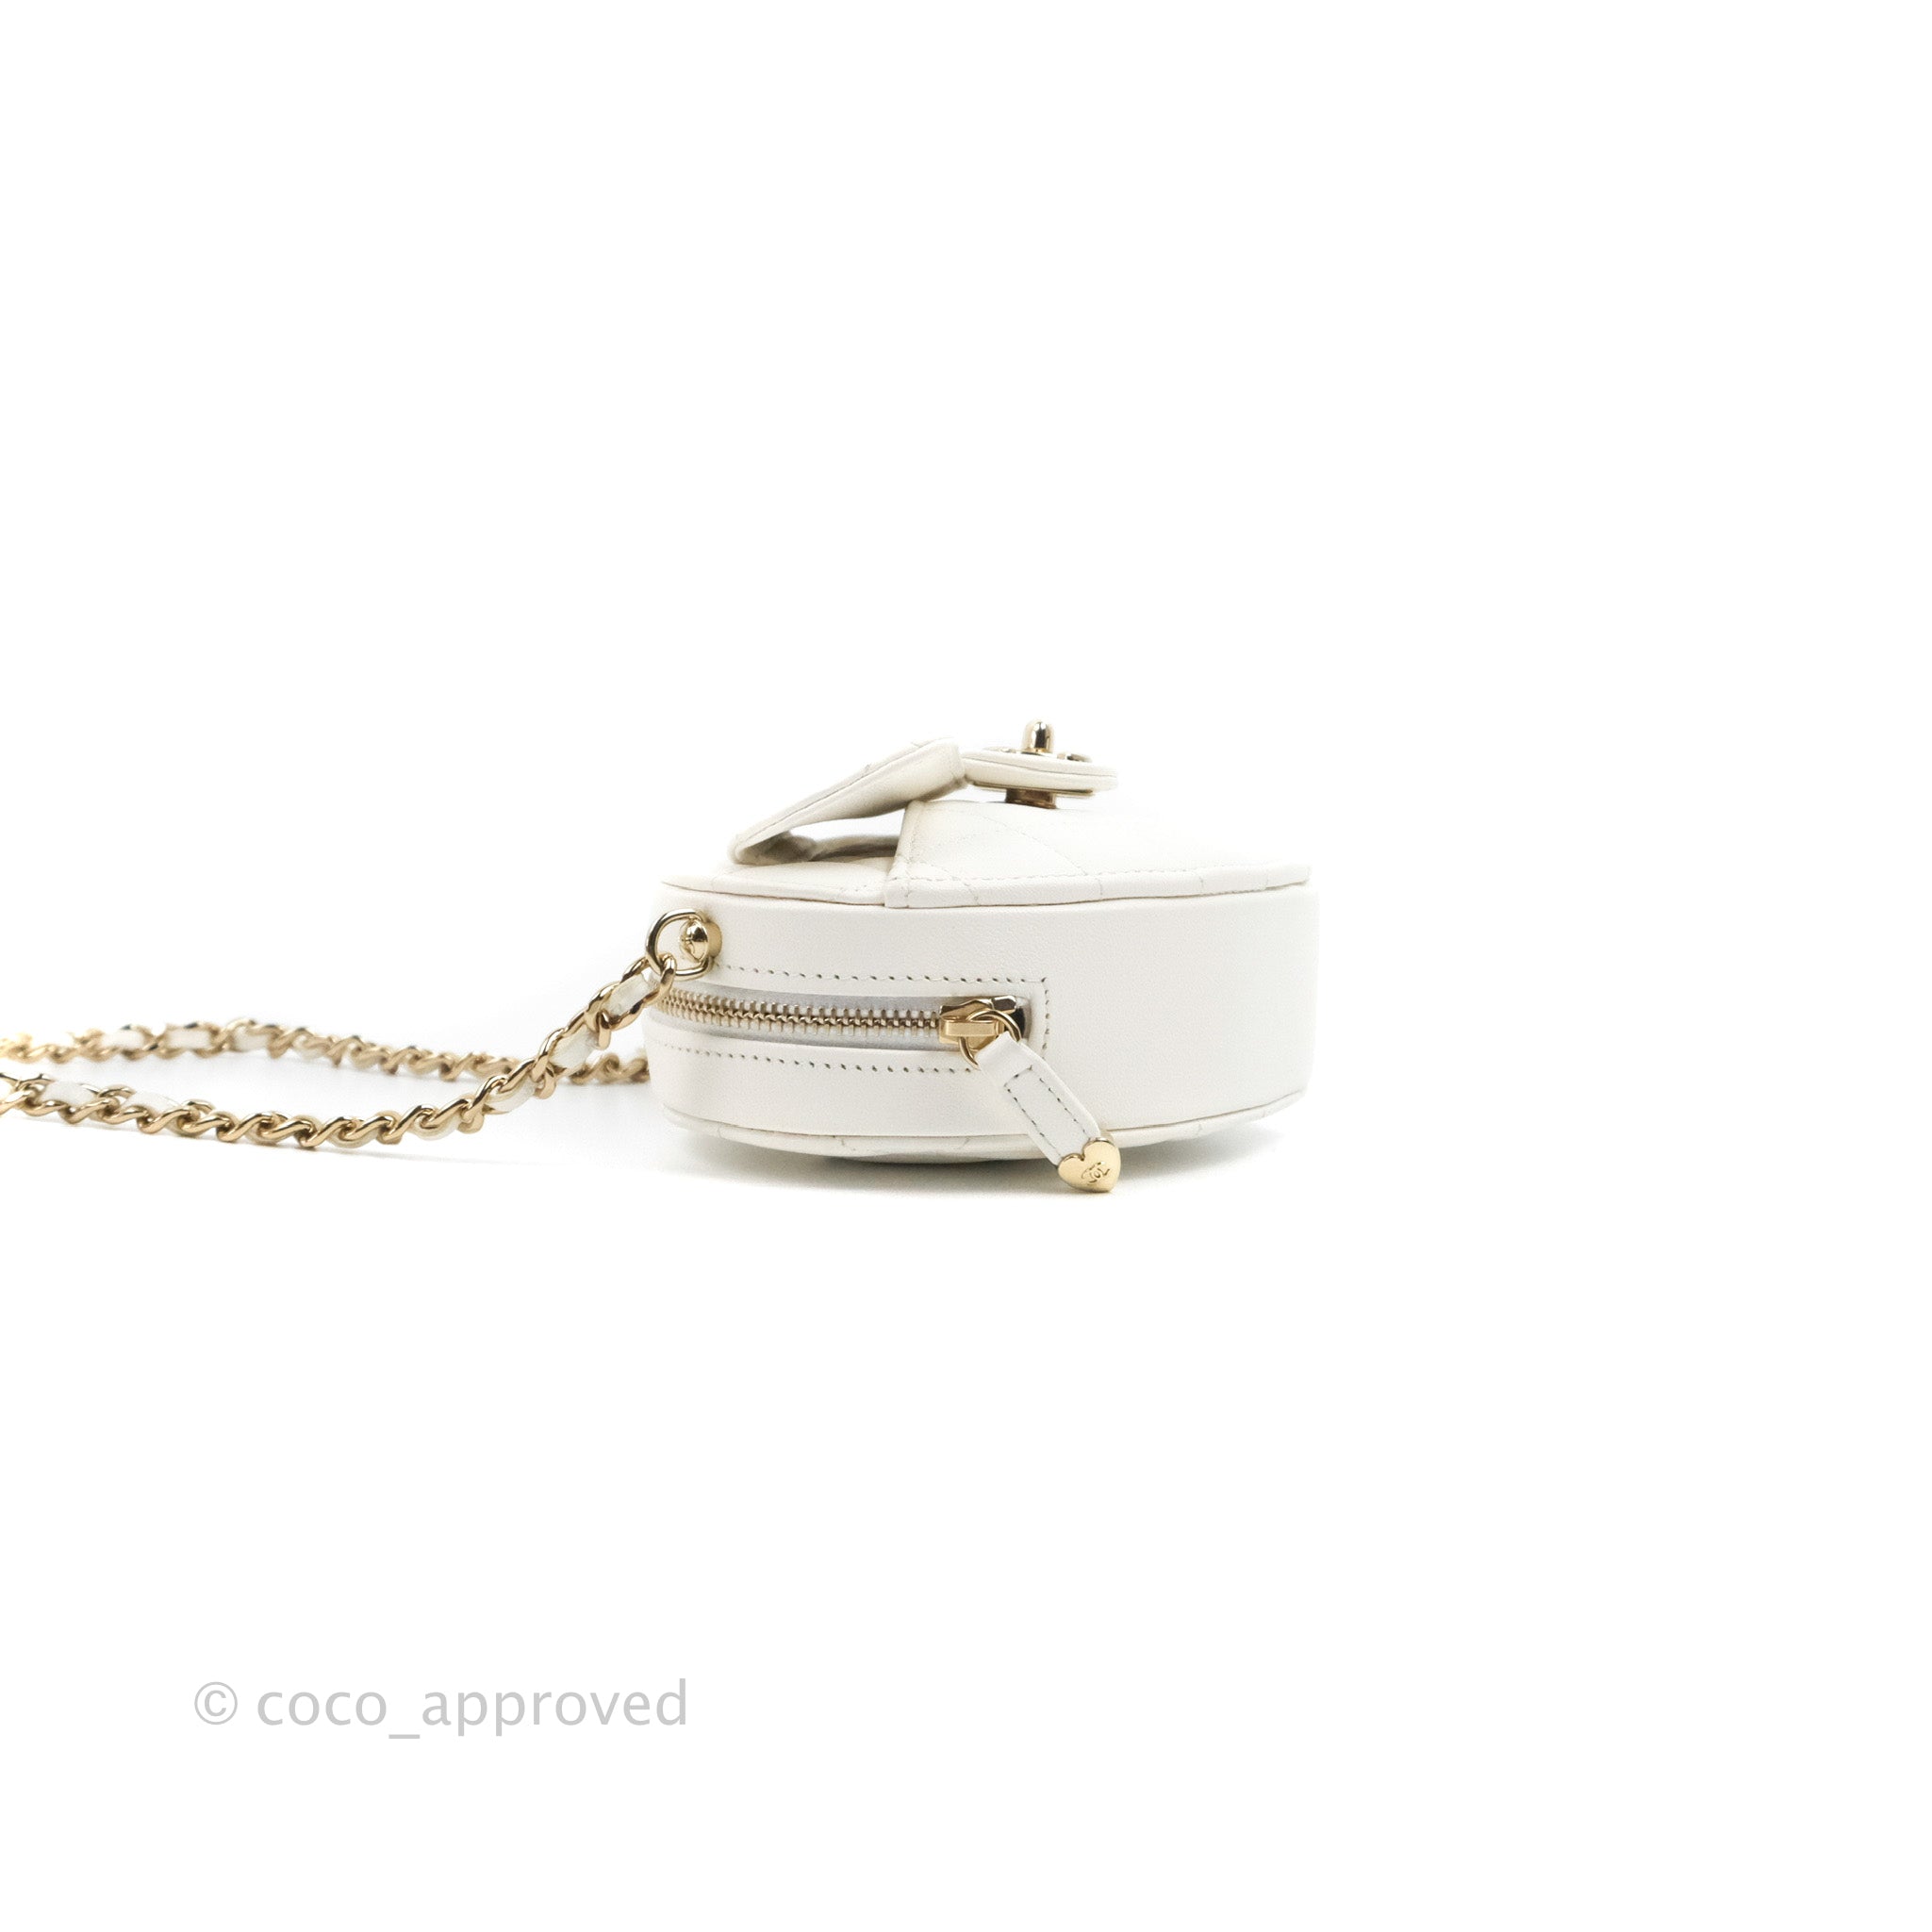 Chanel Heart Clutch With Chain 22S White Lambskin in Lambskin